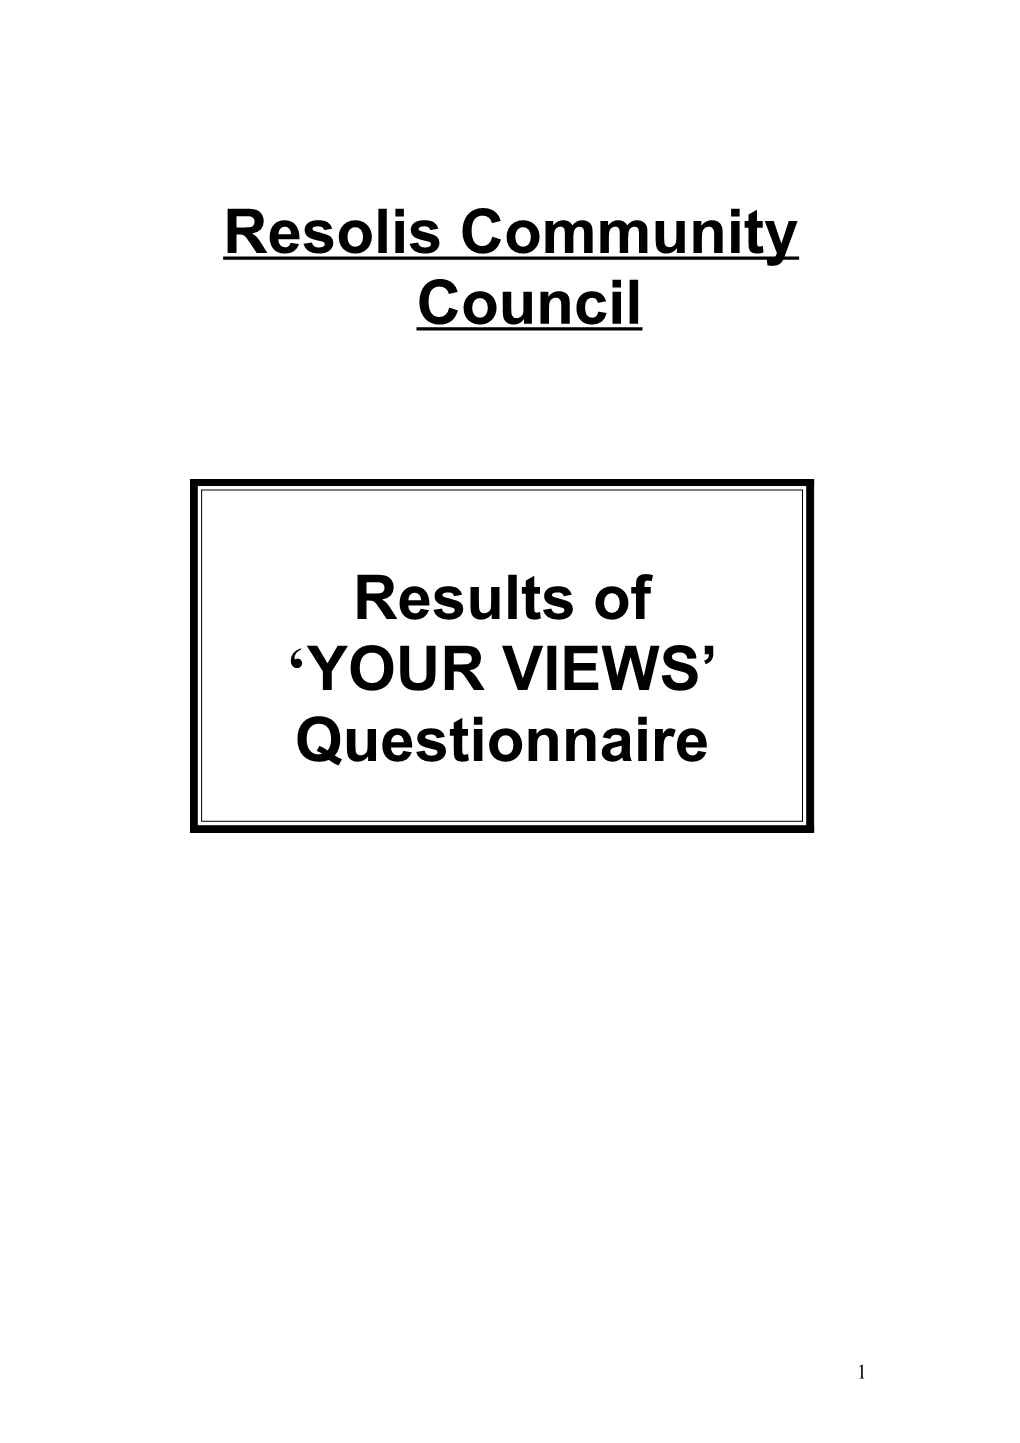 Resolis Community Council Questionnaire (We Could Miss out the Council Bit